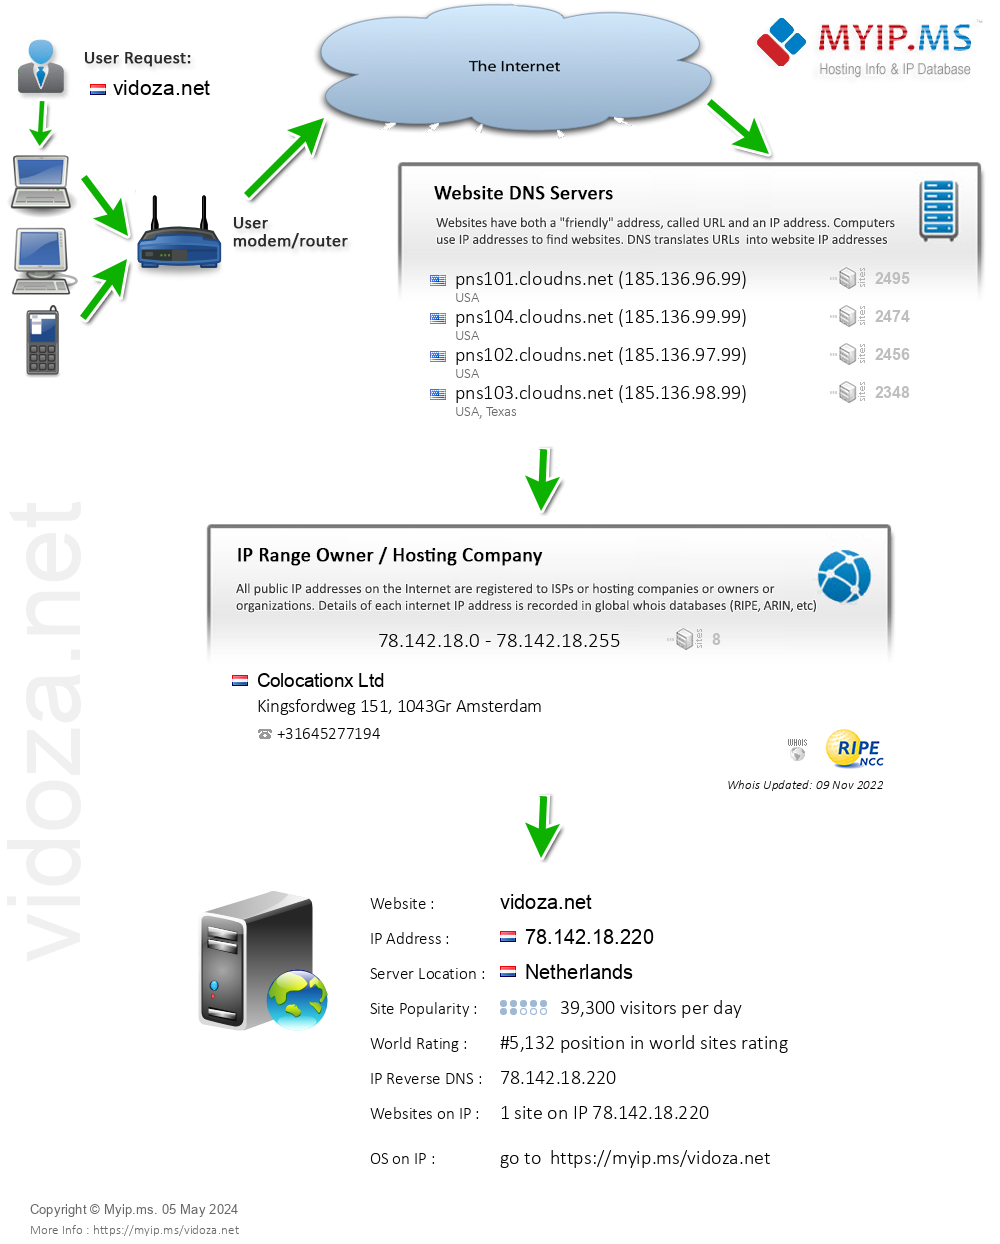 Vidoza.net - Website Hosting Visual IP Diagram